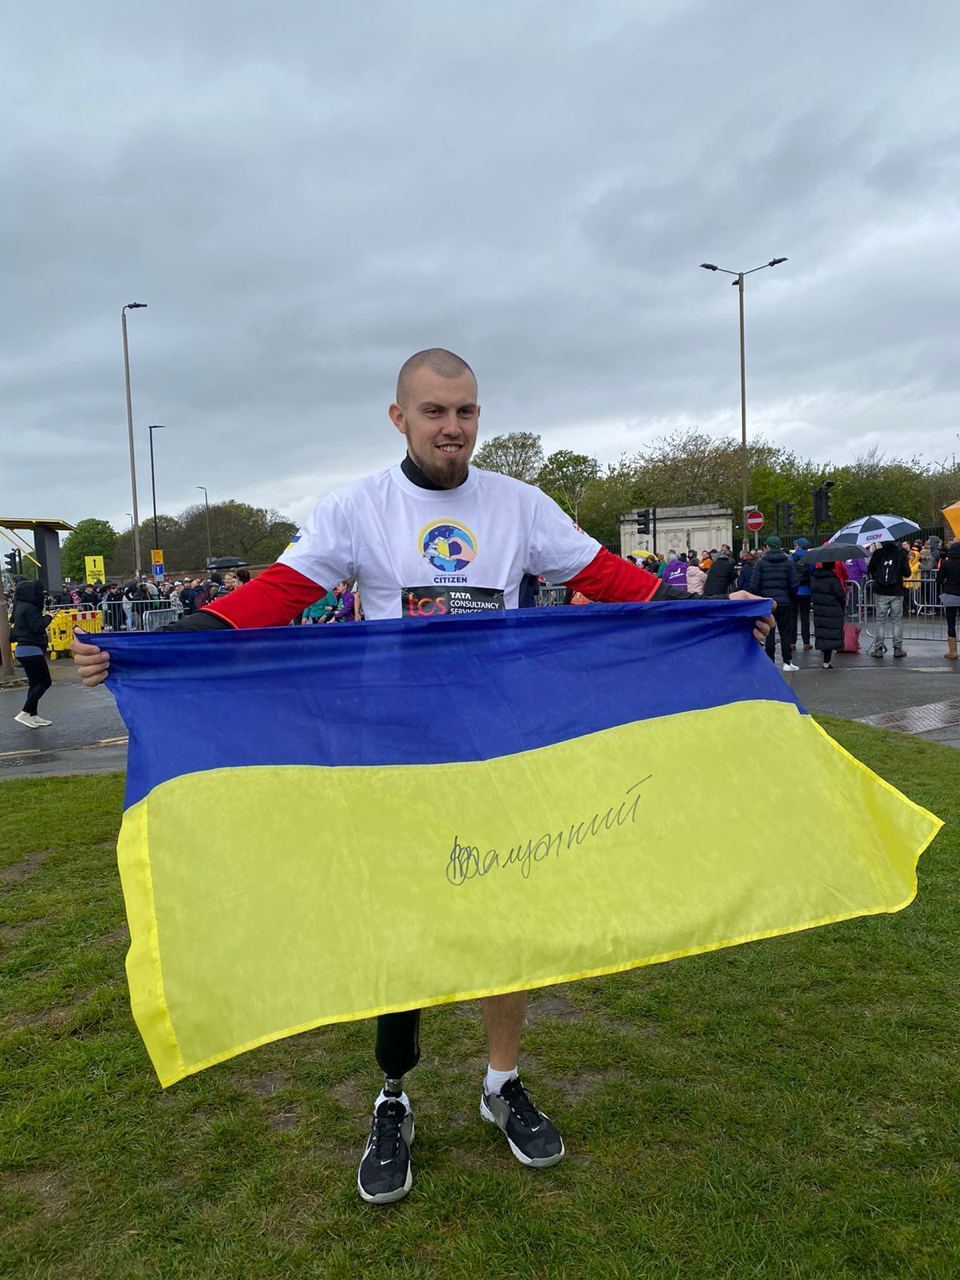 Український військовий, який втратив на фронті ногу, пробіг Лондонський марафон: він збирає кошти на допомогу пораненим бійцям. Відео